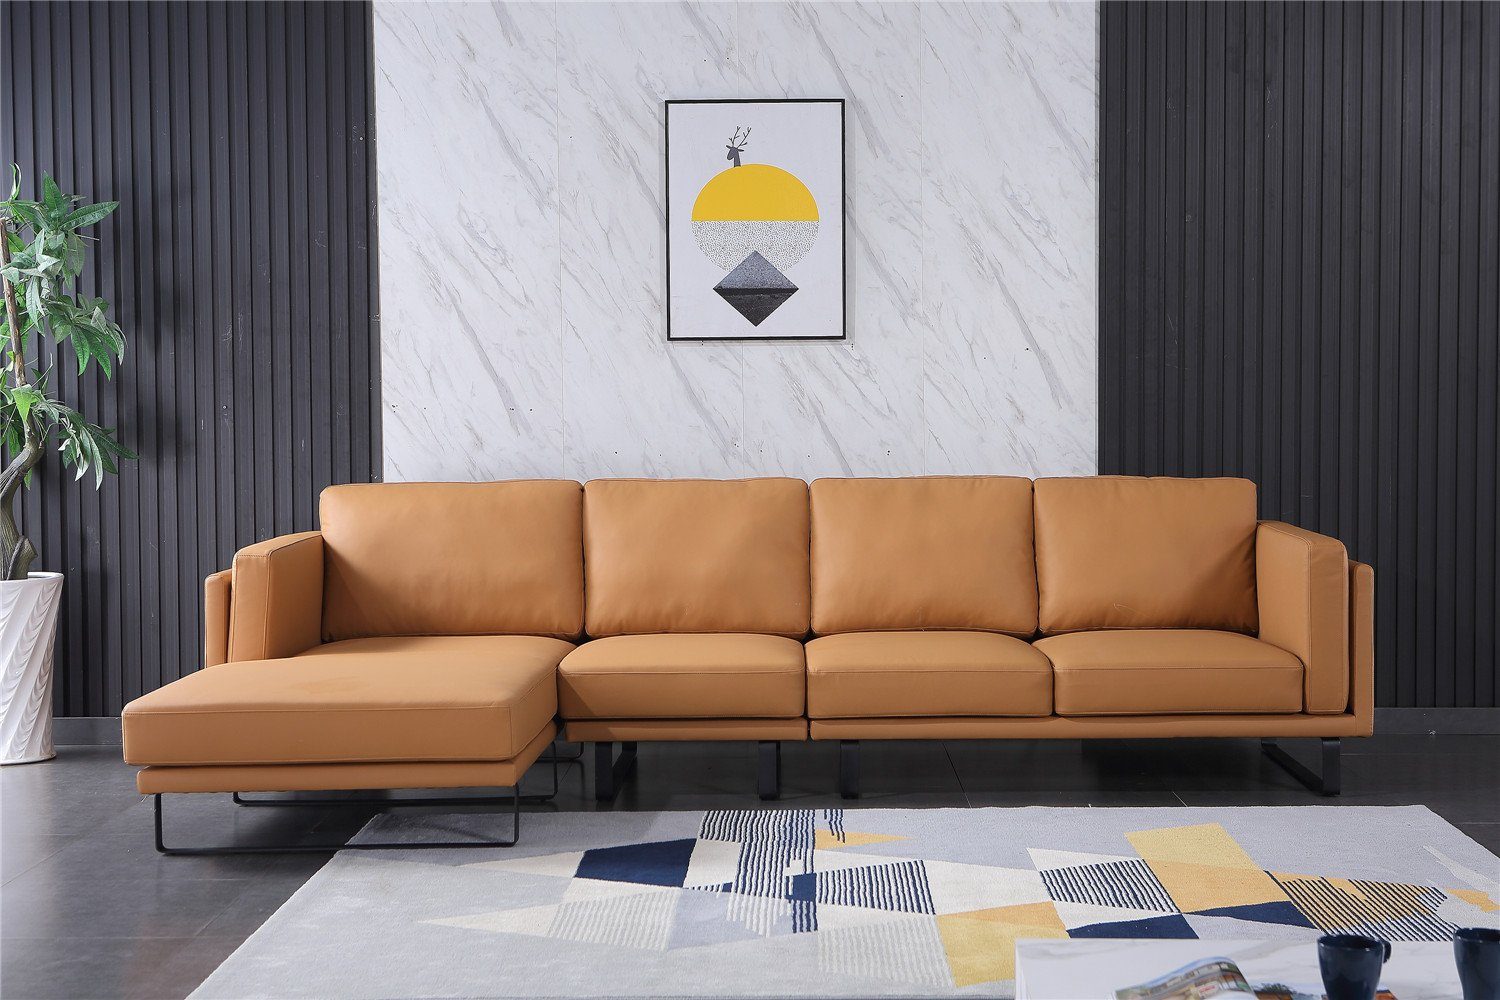 JVmoebel Ecksofa, Ledersofa Garnitur Design Beige Modern Sofagarnitur Ecksofa Sofa Couch Eck